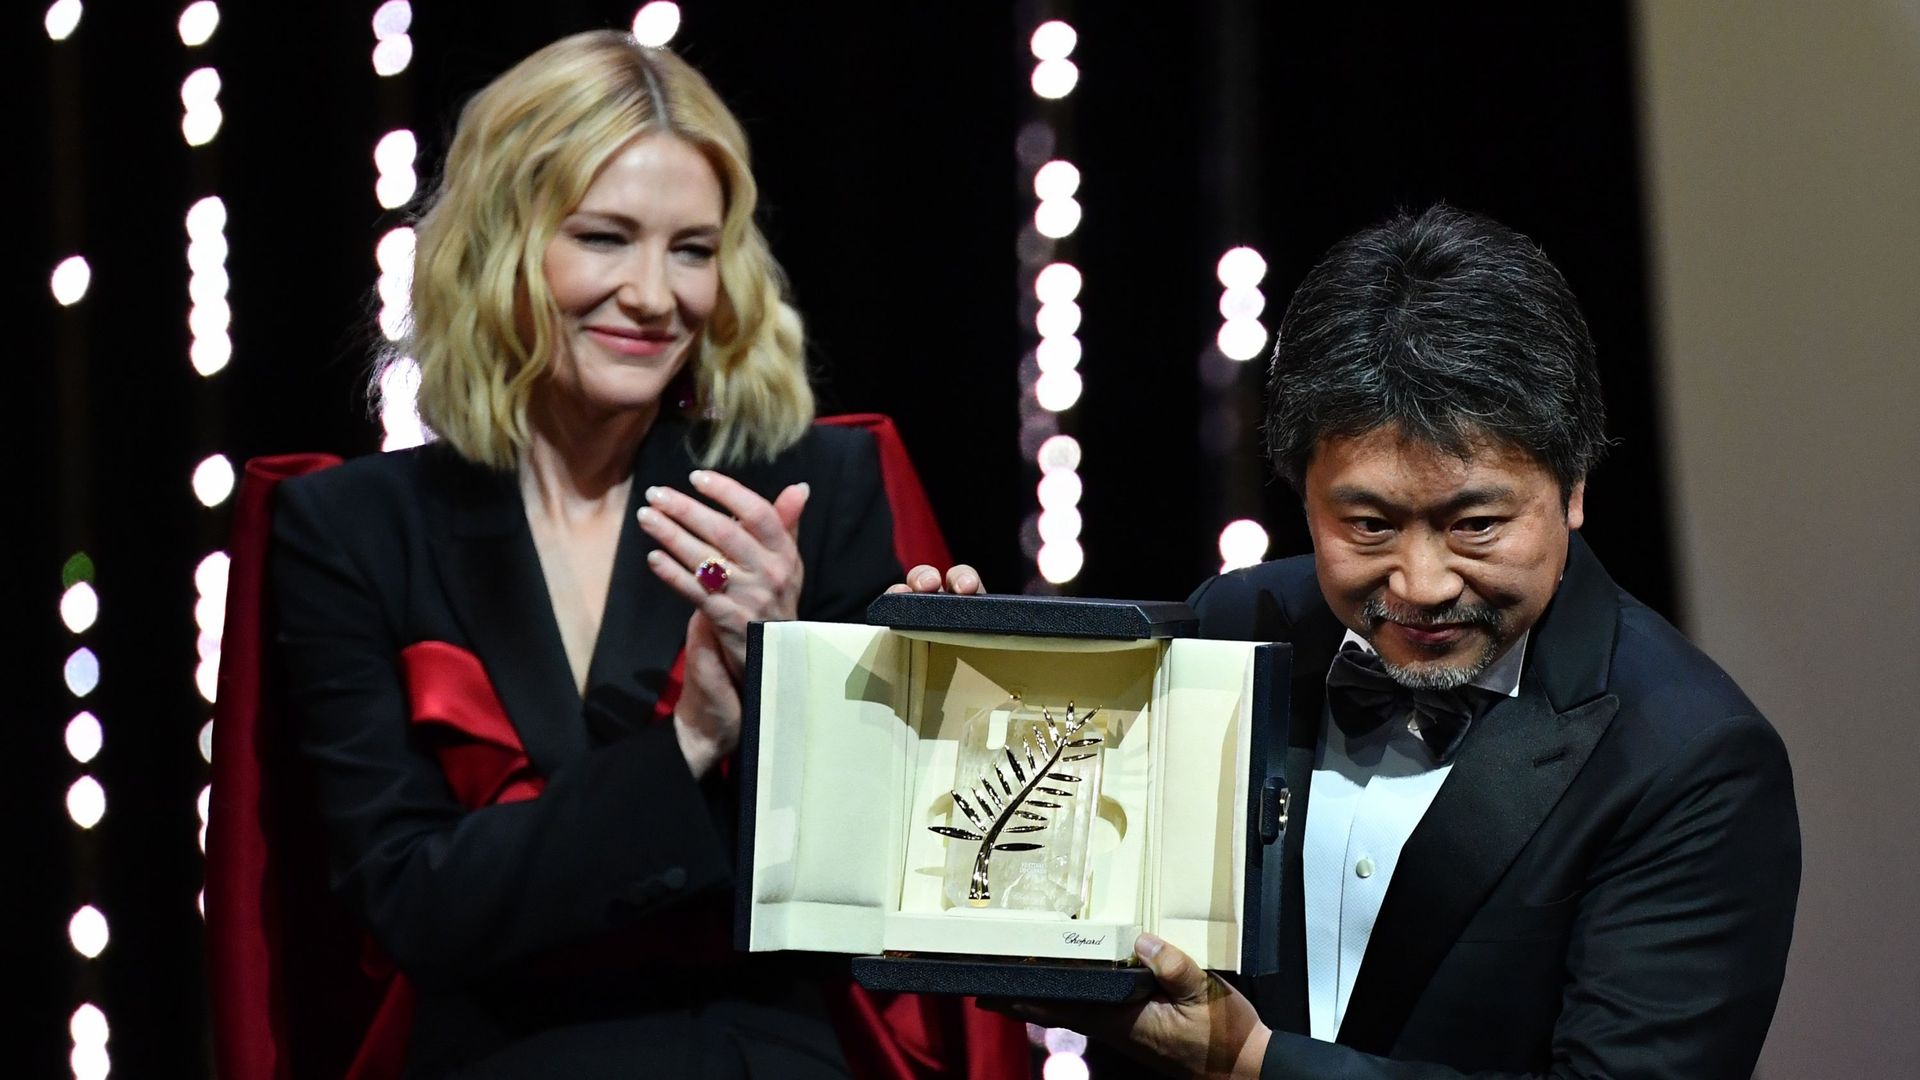 Festival de Cannes : la Palme d'or à "Une affaire de famille" du Japonais Kore-Eda